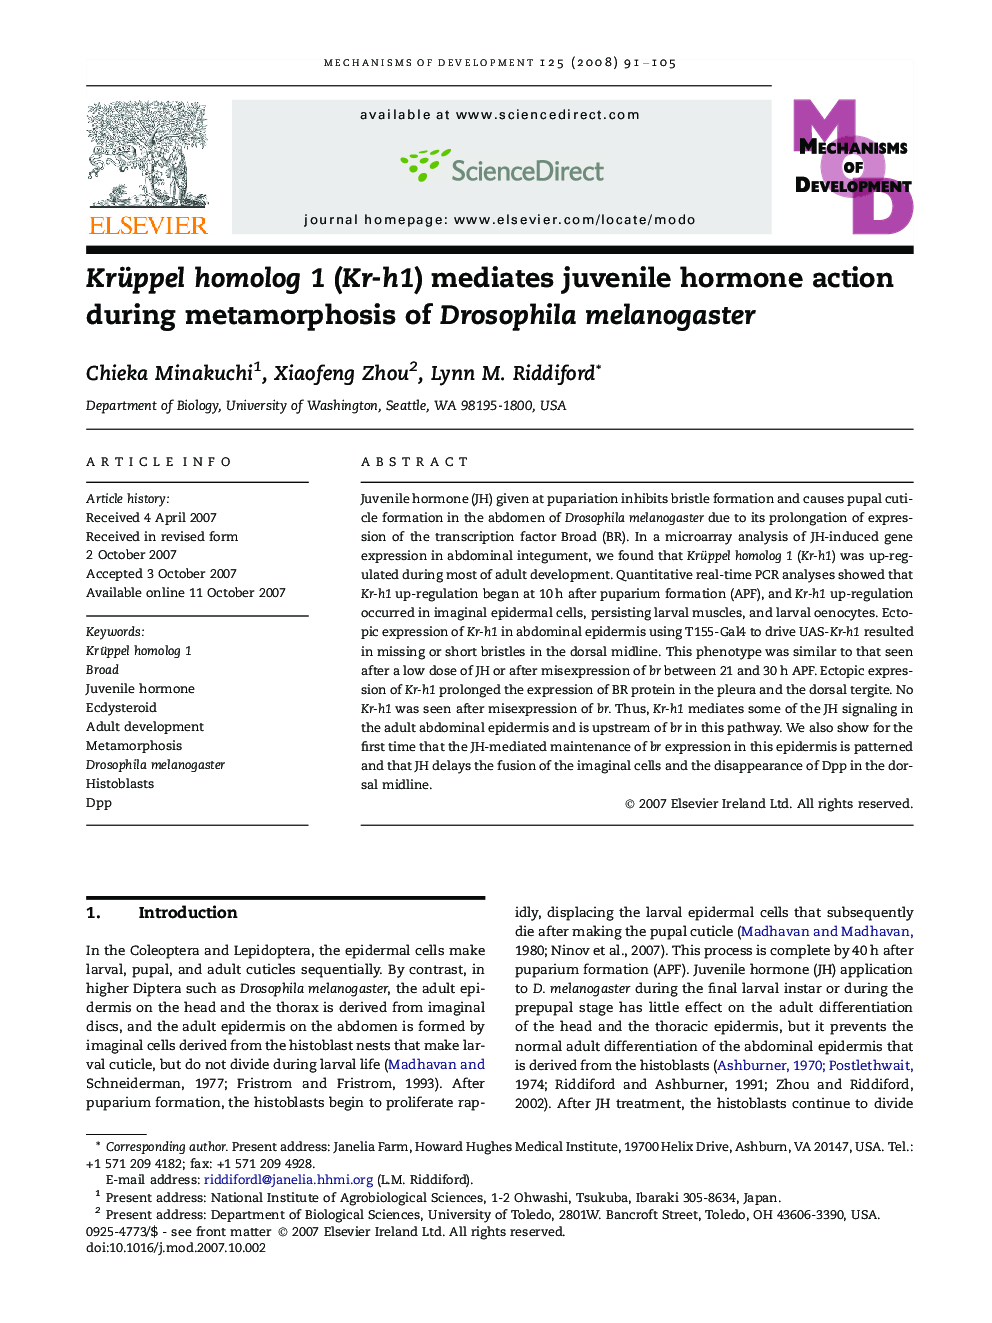 Krüppel homolog 1 (Kr-h1) mediates juvenile hormone action during metamorphosis of Drosophila melanogaster